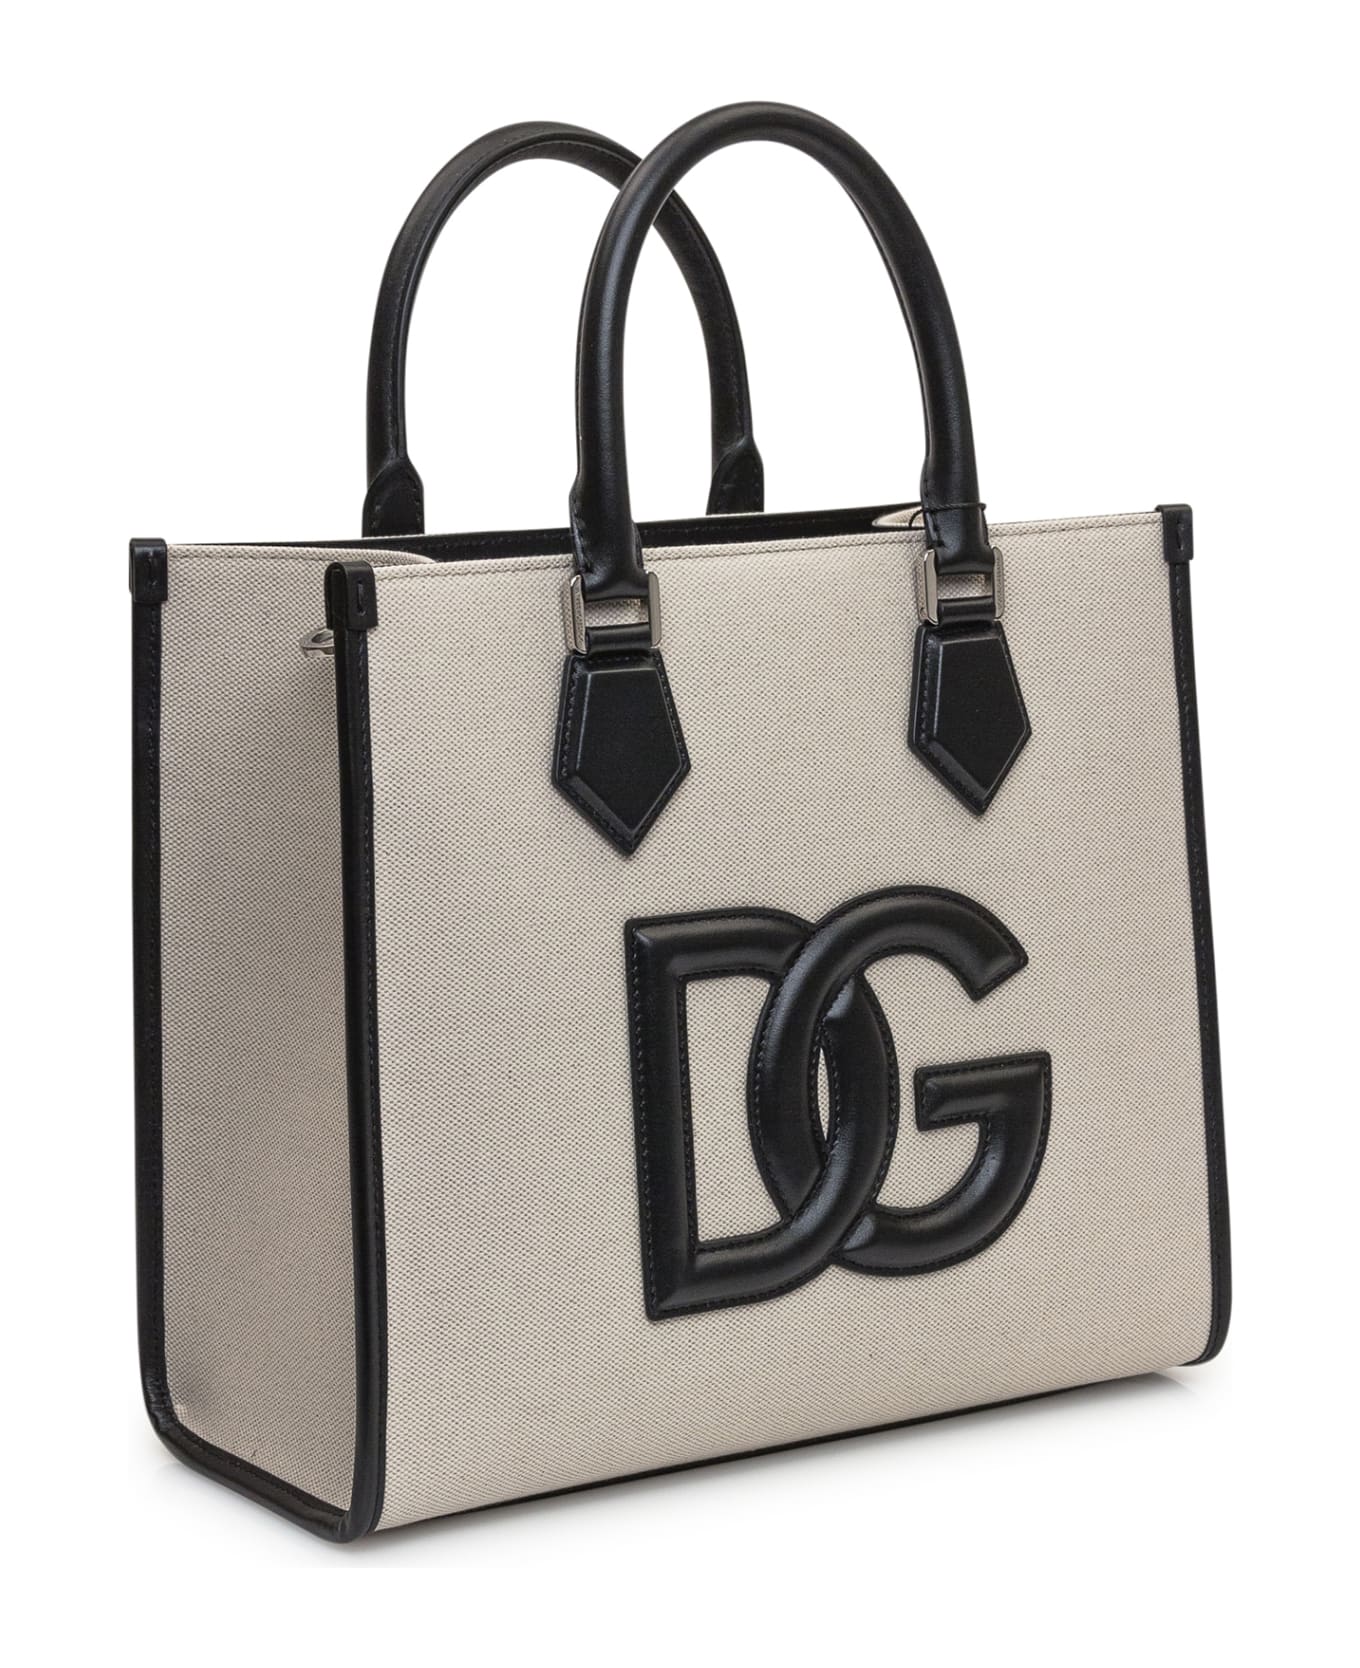 Dolce & Gabbana Shopping Bag - Avio トートバッグ